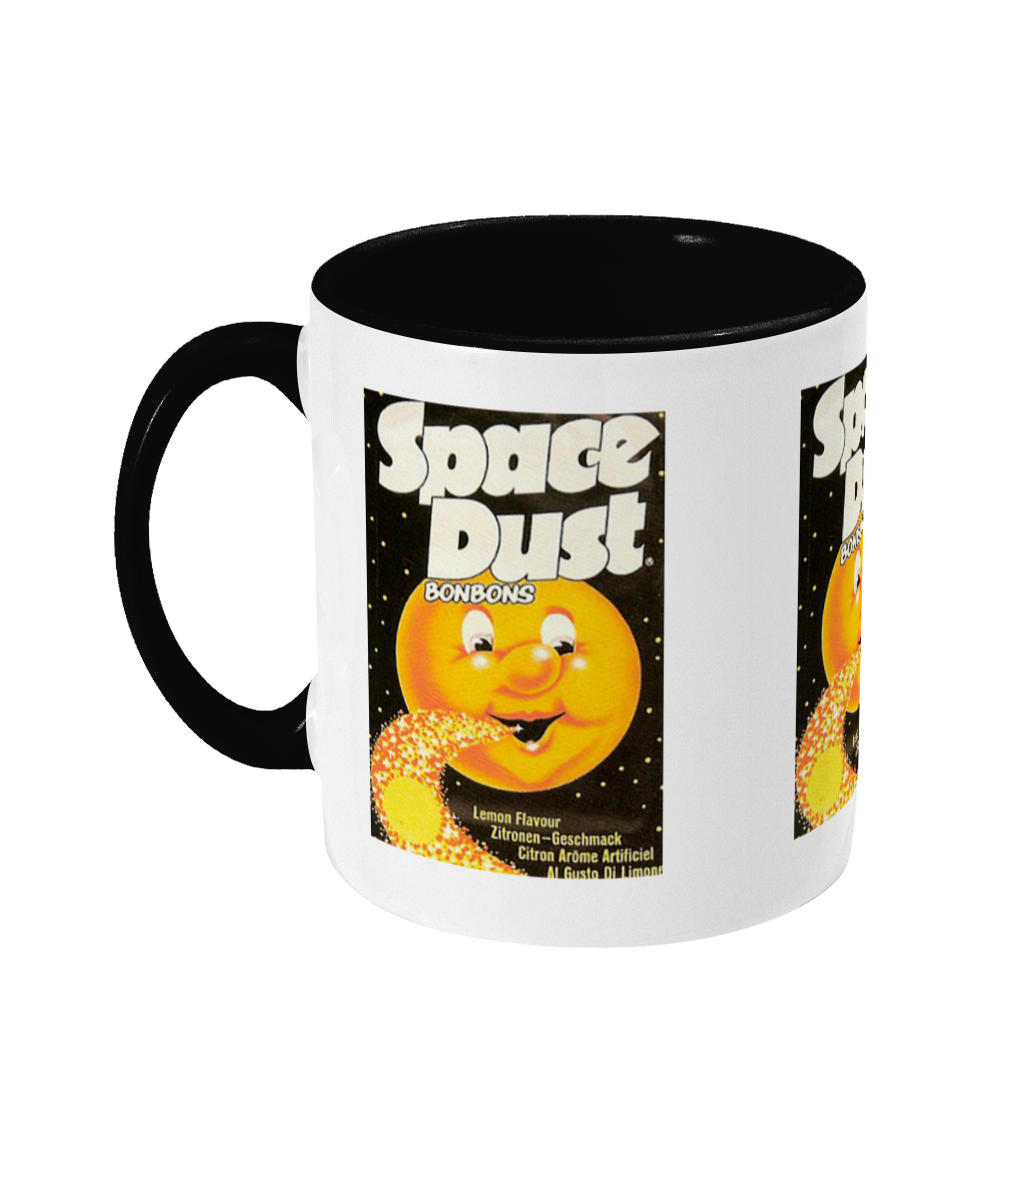 Sweet Shop 'Space Dust'